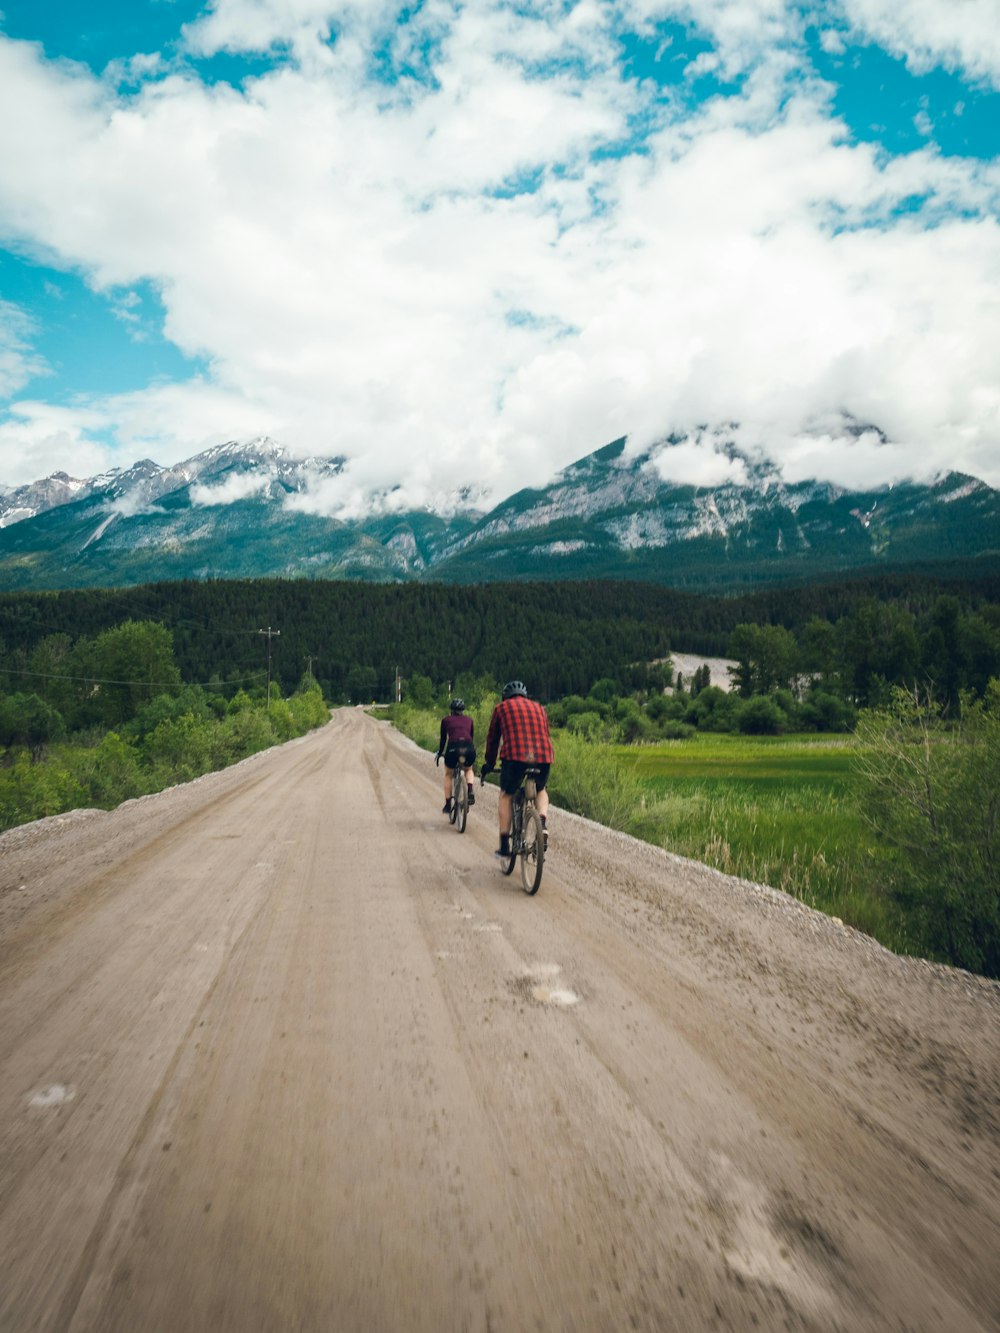 山を背景にした未舗装の道路で自転車に乗るカップル